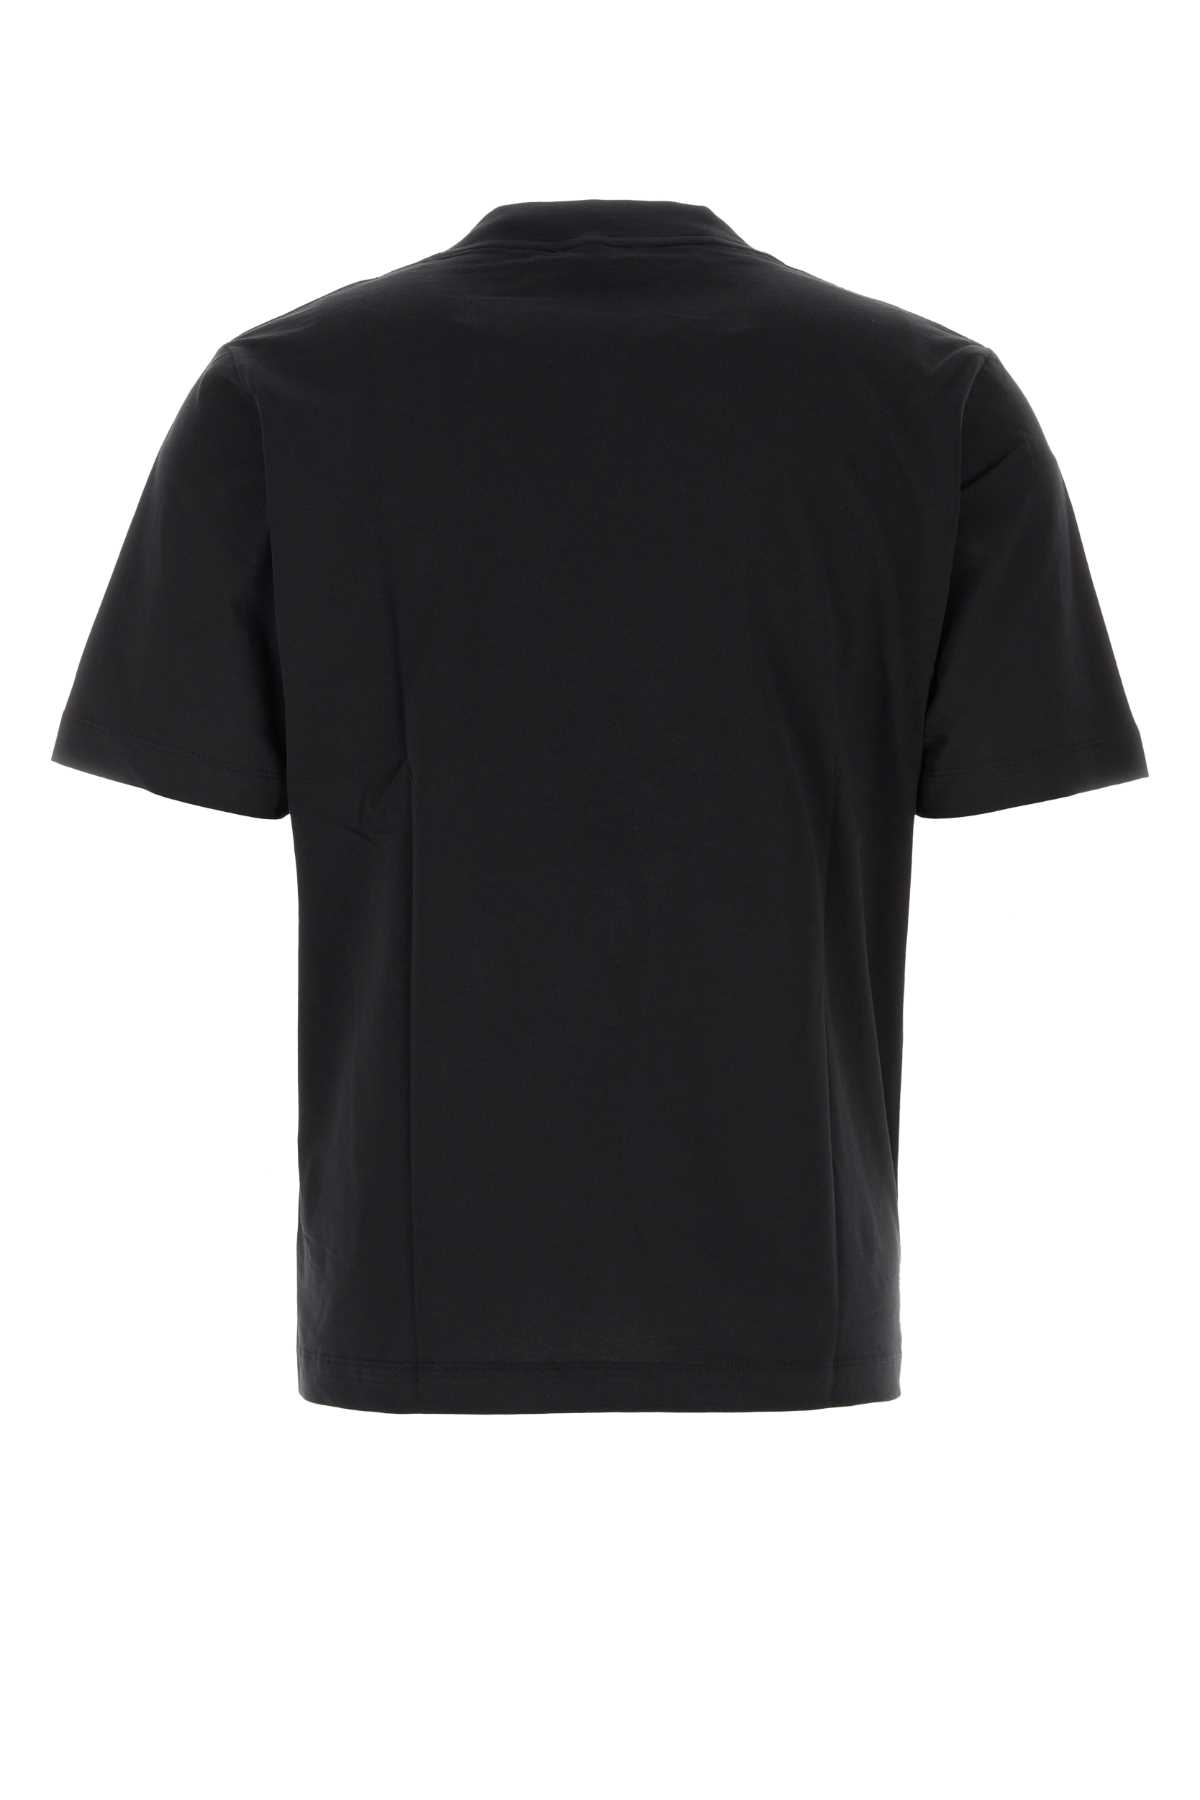 Shop Etudes Studio Black Cotton T-shirt